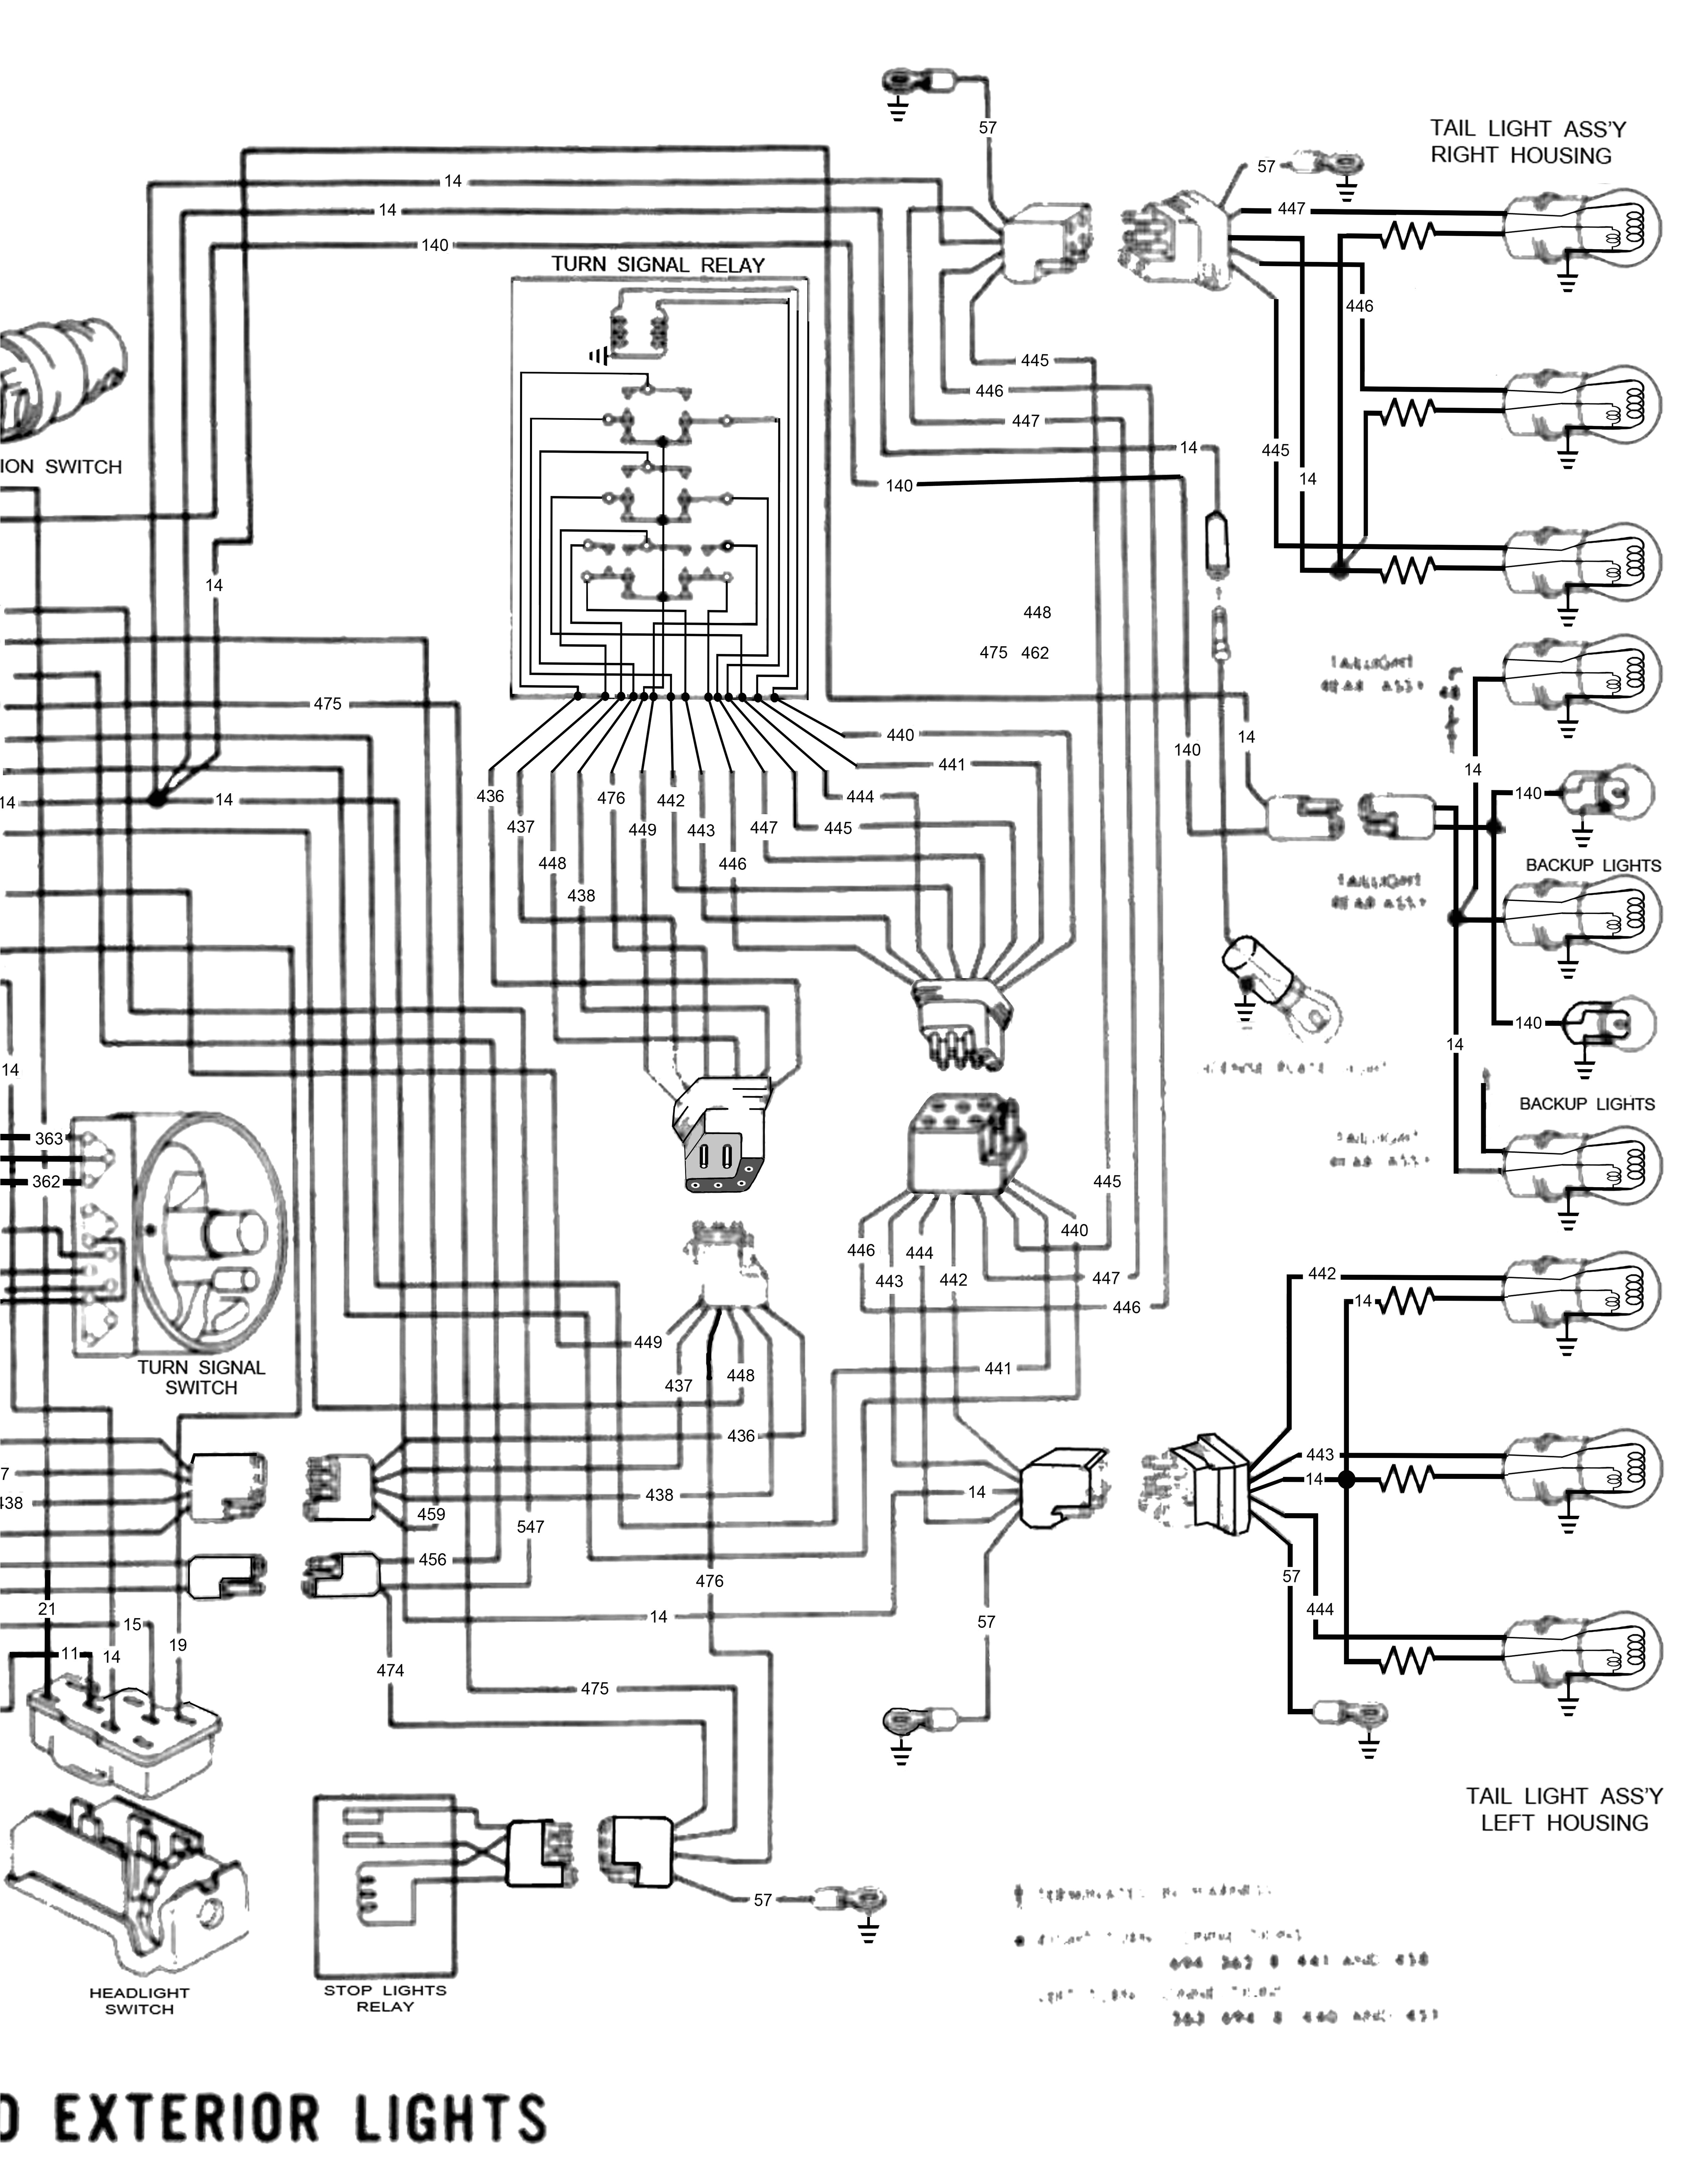 98 kenworth wiring diagram wiring diagram name 2004 kenworth t800 wiring diagram free picture wiring diagram